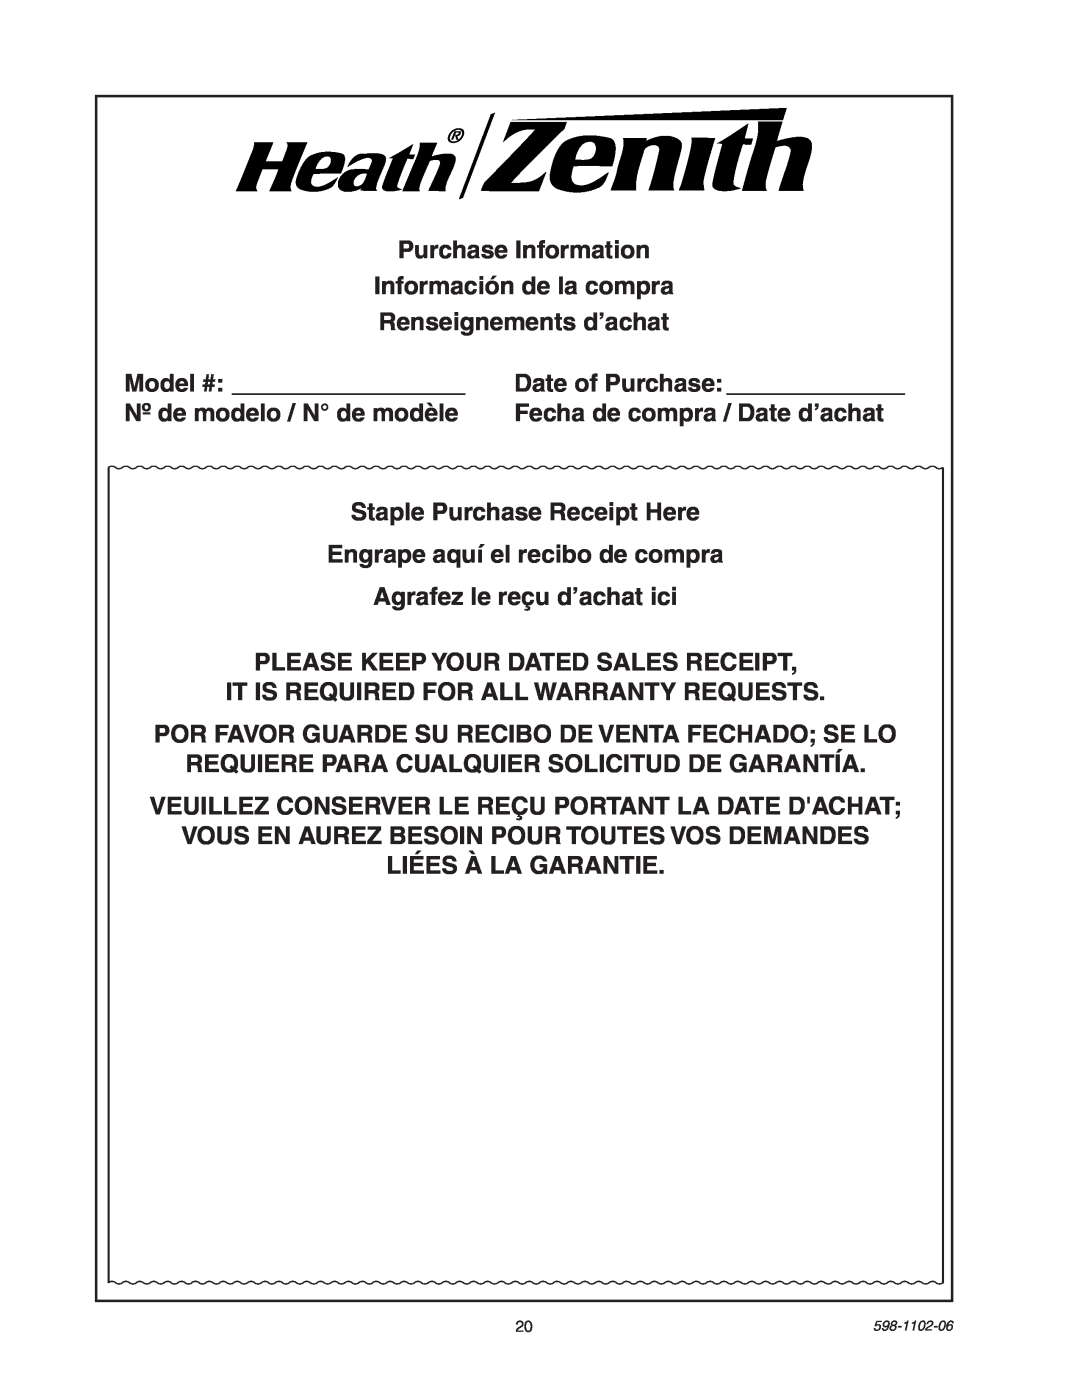 Heath Zenith 5105 manual Purchase Information Información de la compra 